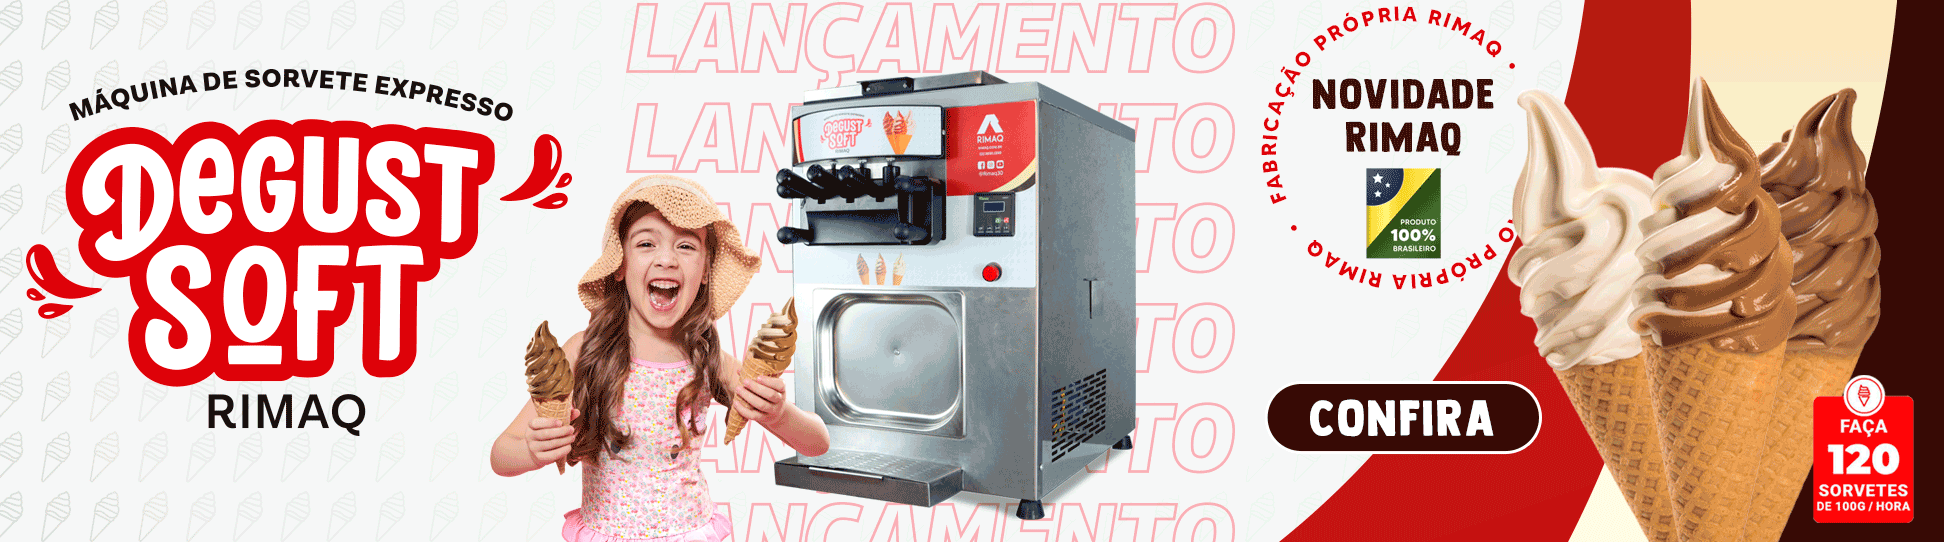 Máquina de sorvete expresso soft Rimaq